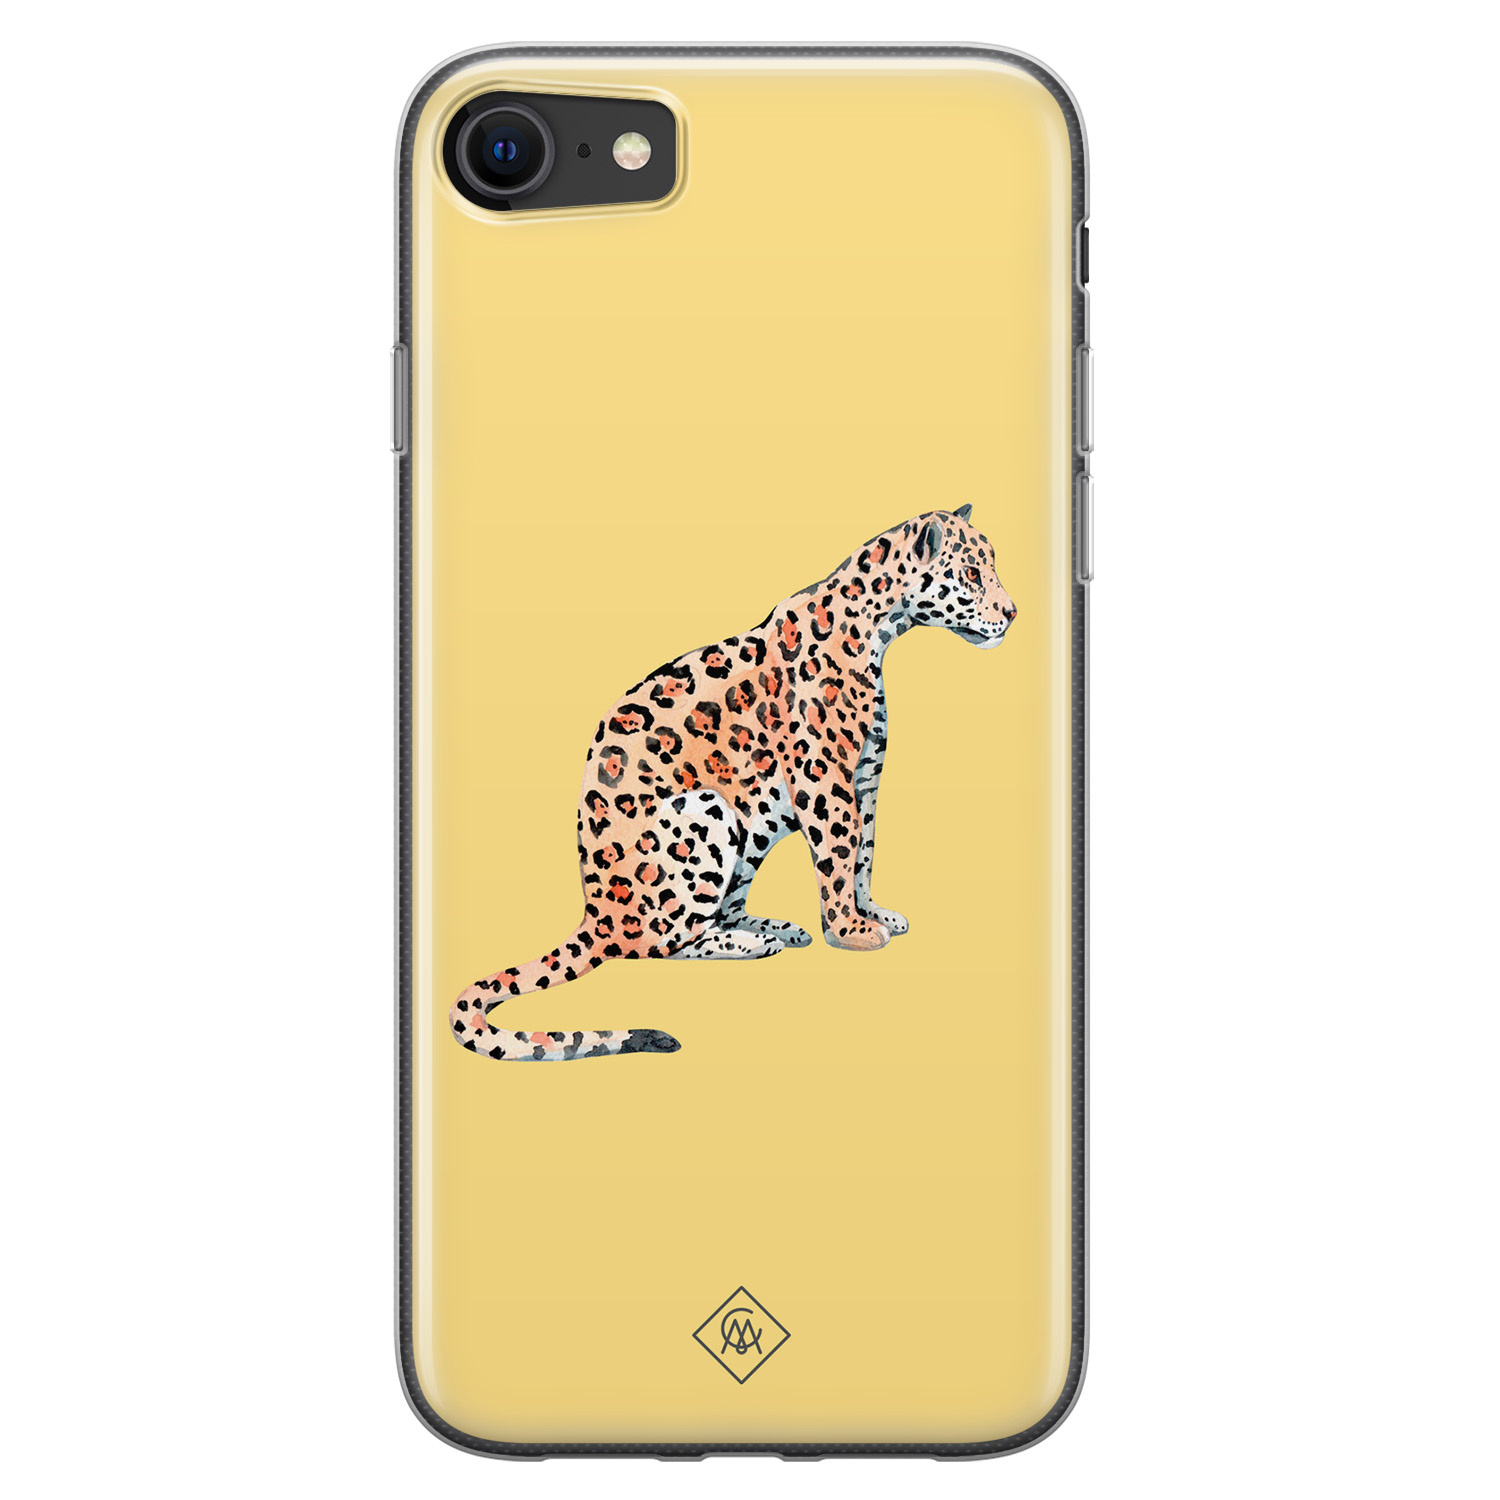 Kameel Hover Pakistaans iPhone SE 2020 siliconen hoesje - Leo wild - Casimoda.nl